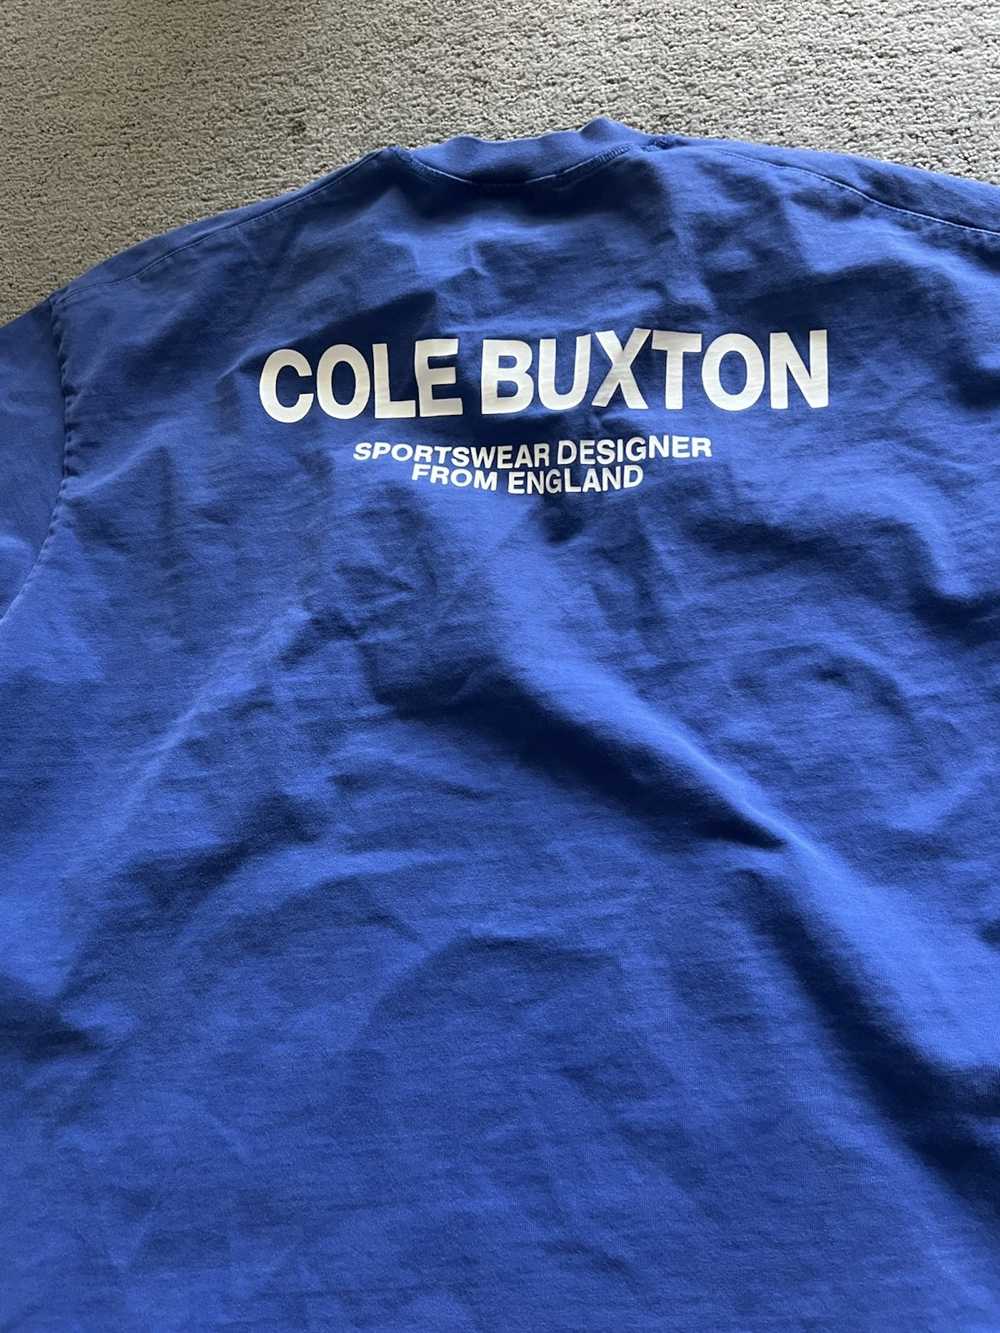 Cole buxton cole buxton - Gem